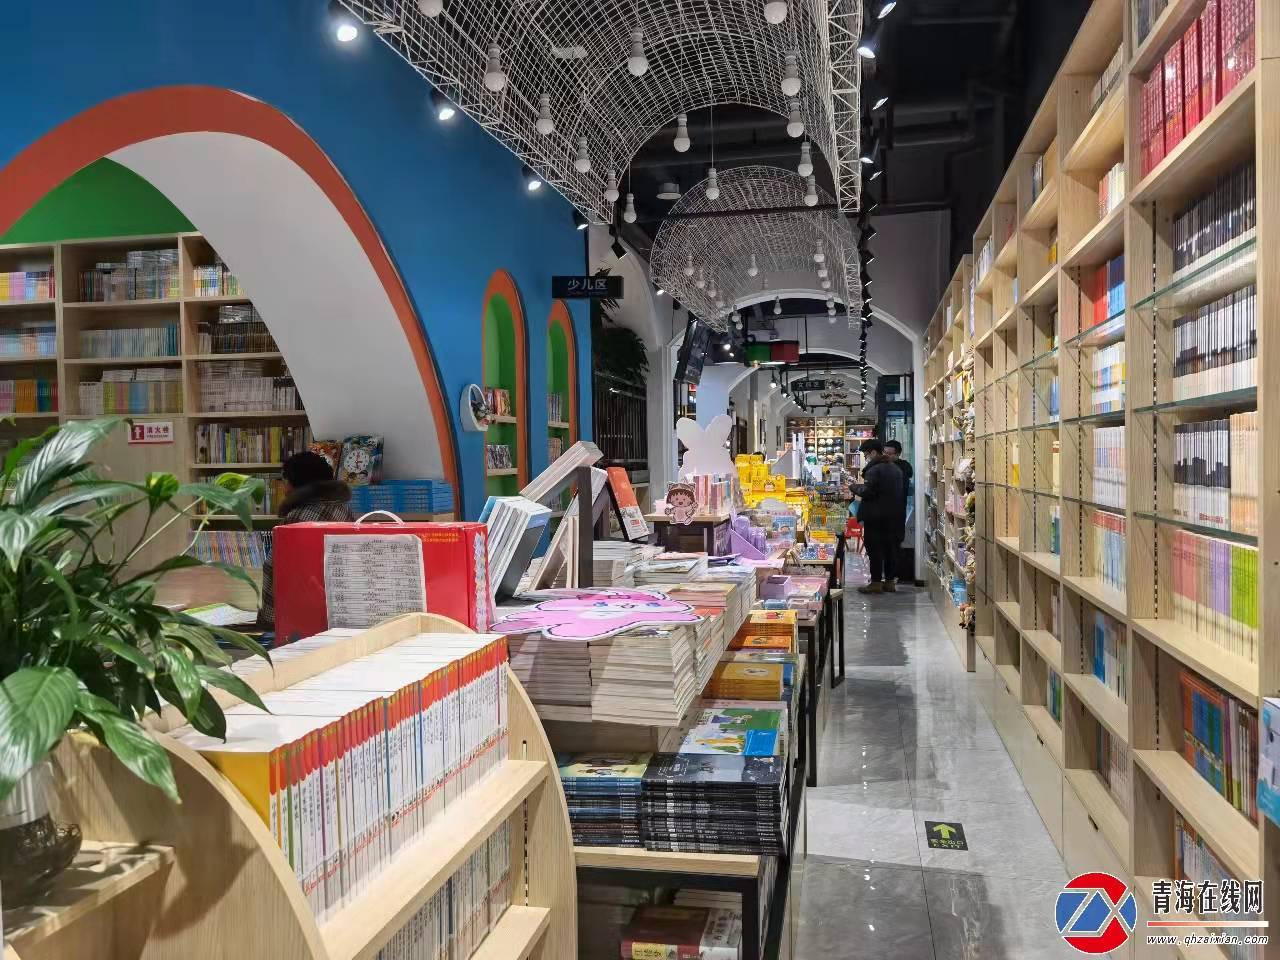 文芯中区 马玉娟 让莫家书店成为莫家沟村的 文化 招牌 总寨镇 书籍 生活